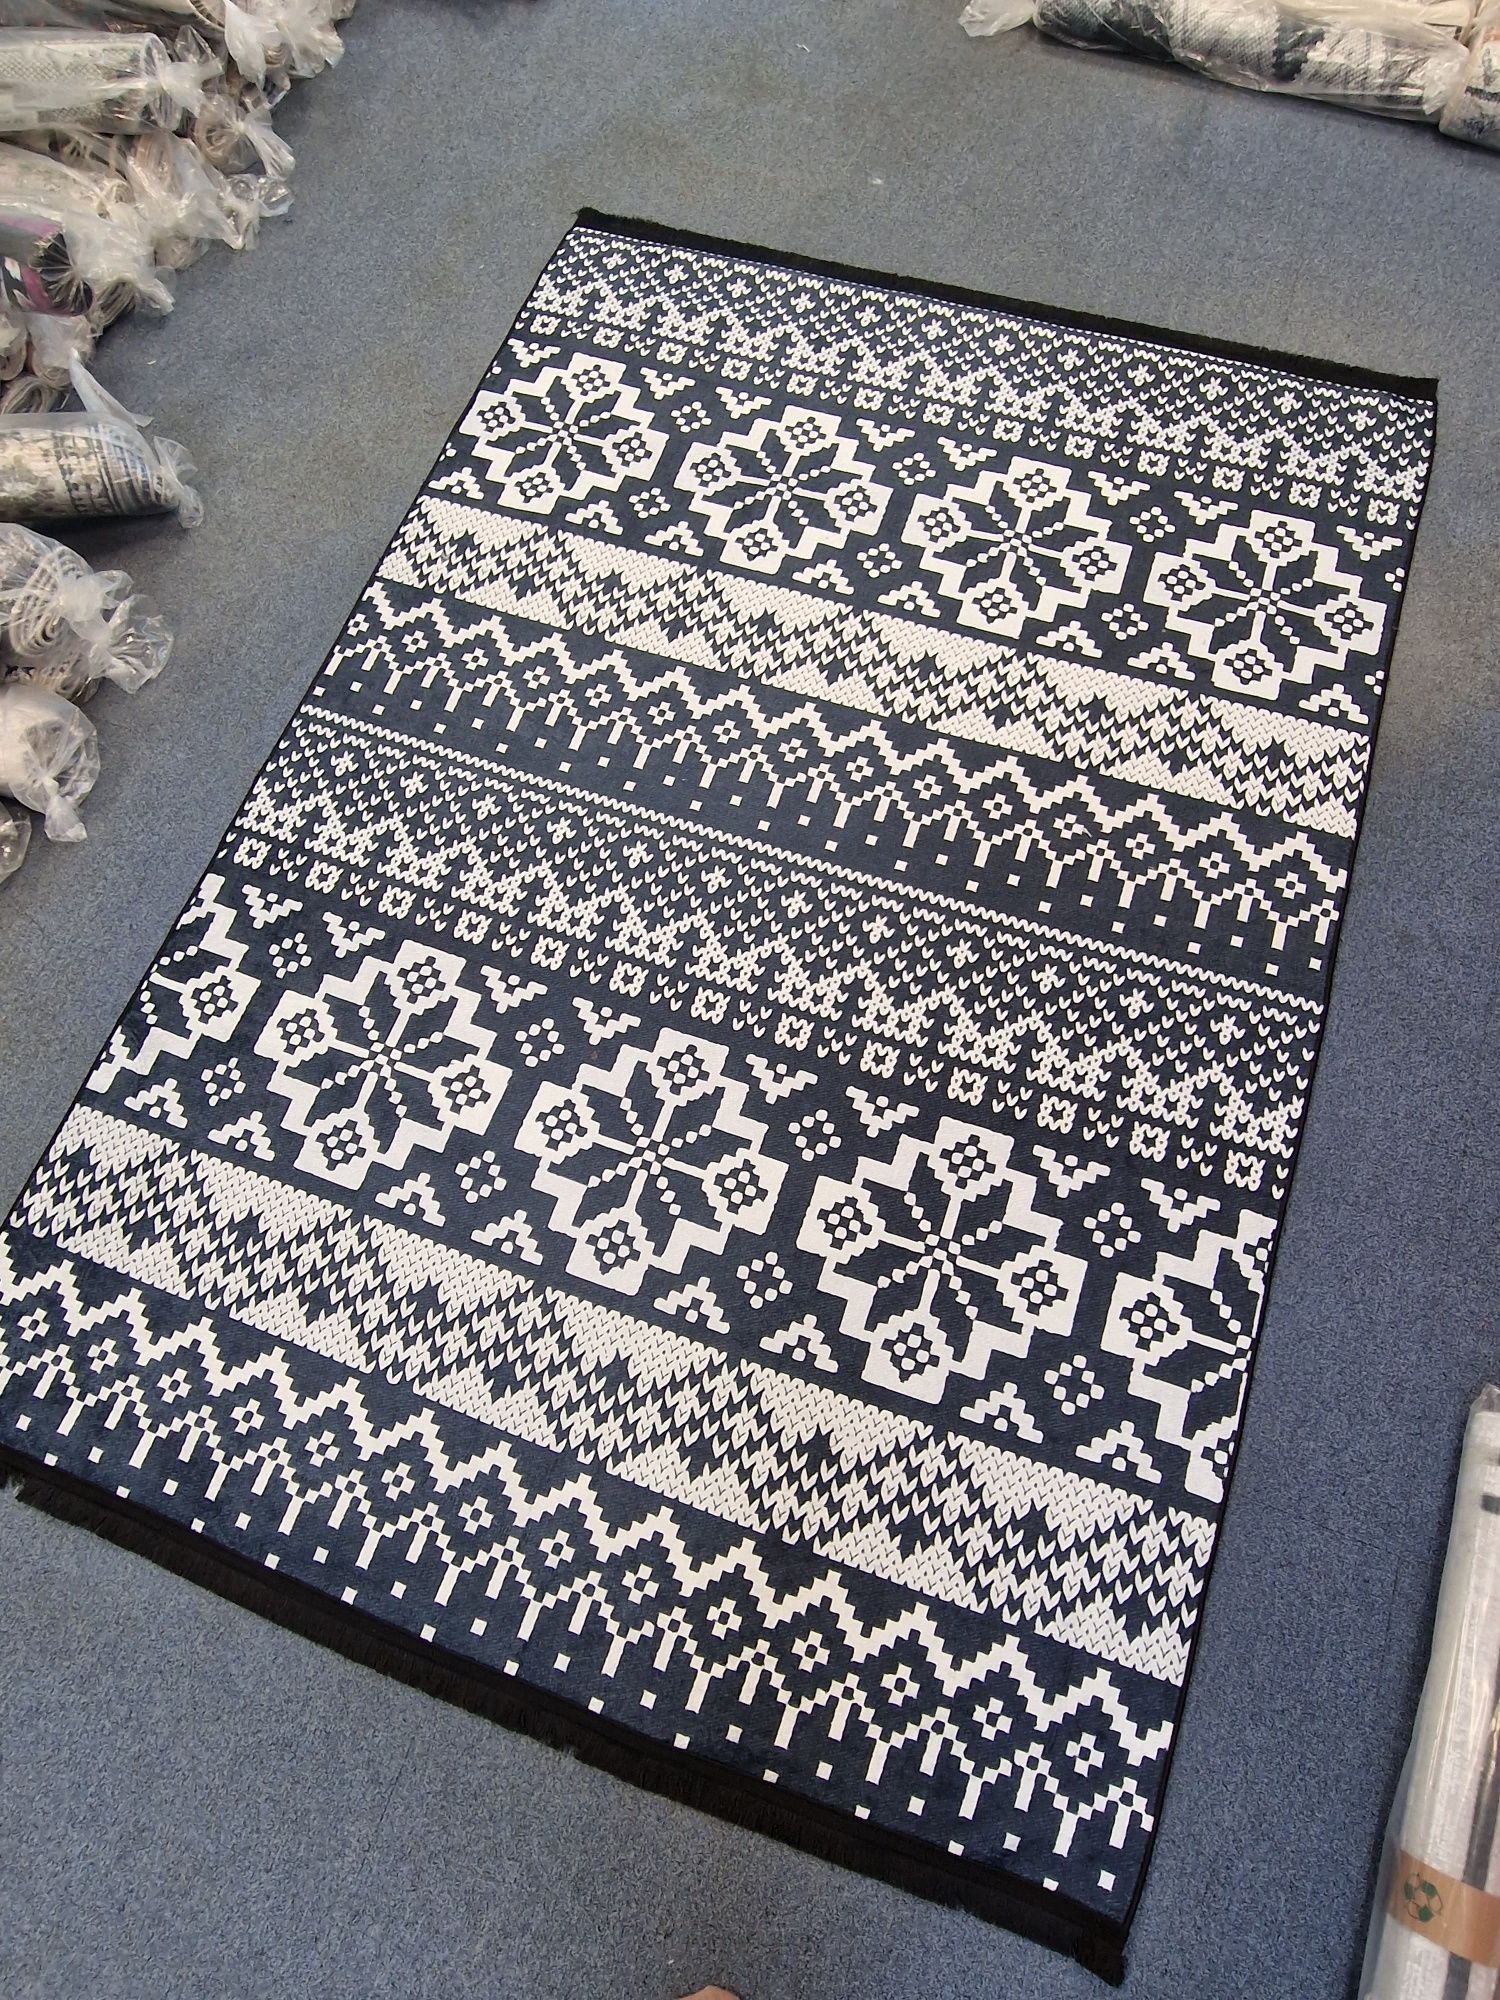 Promocja!Nowe dywany tureckie nowoczesne 160x230